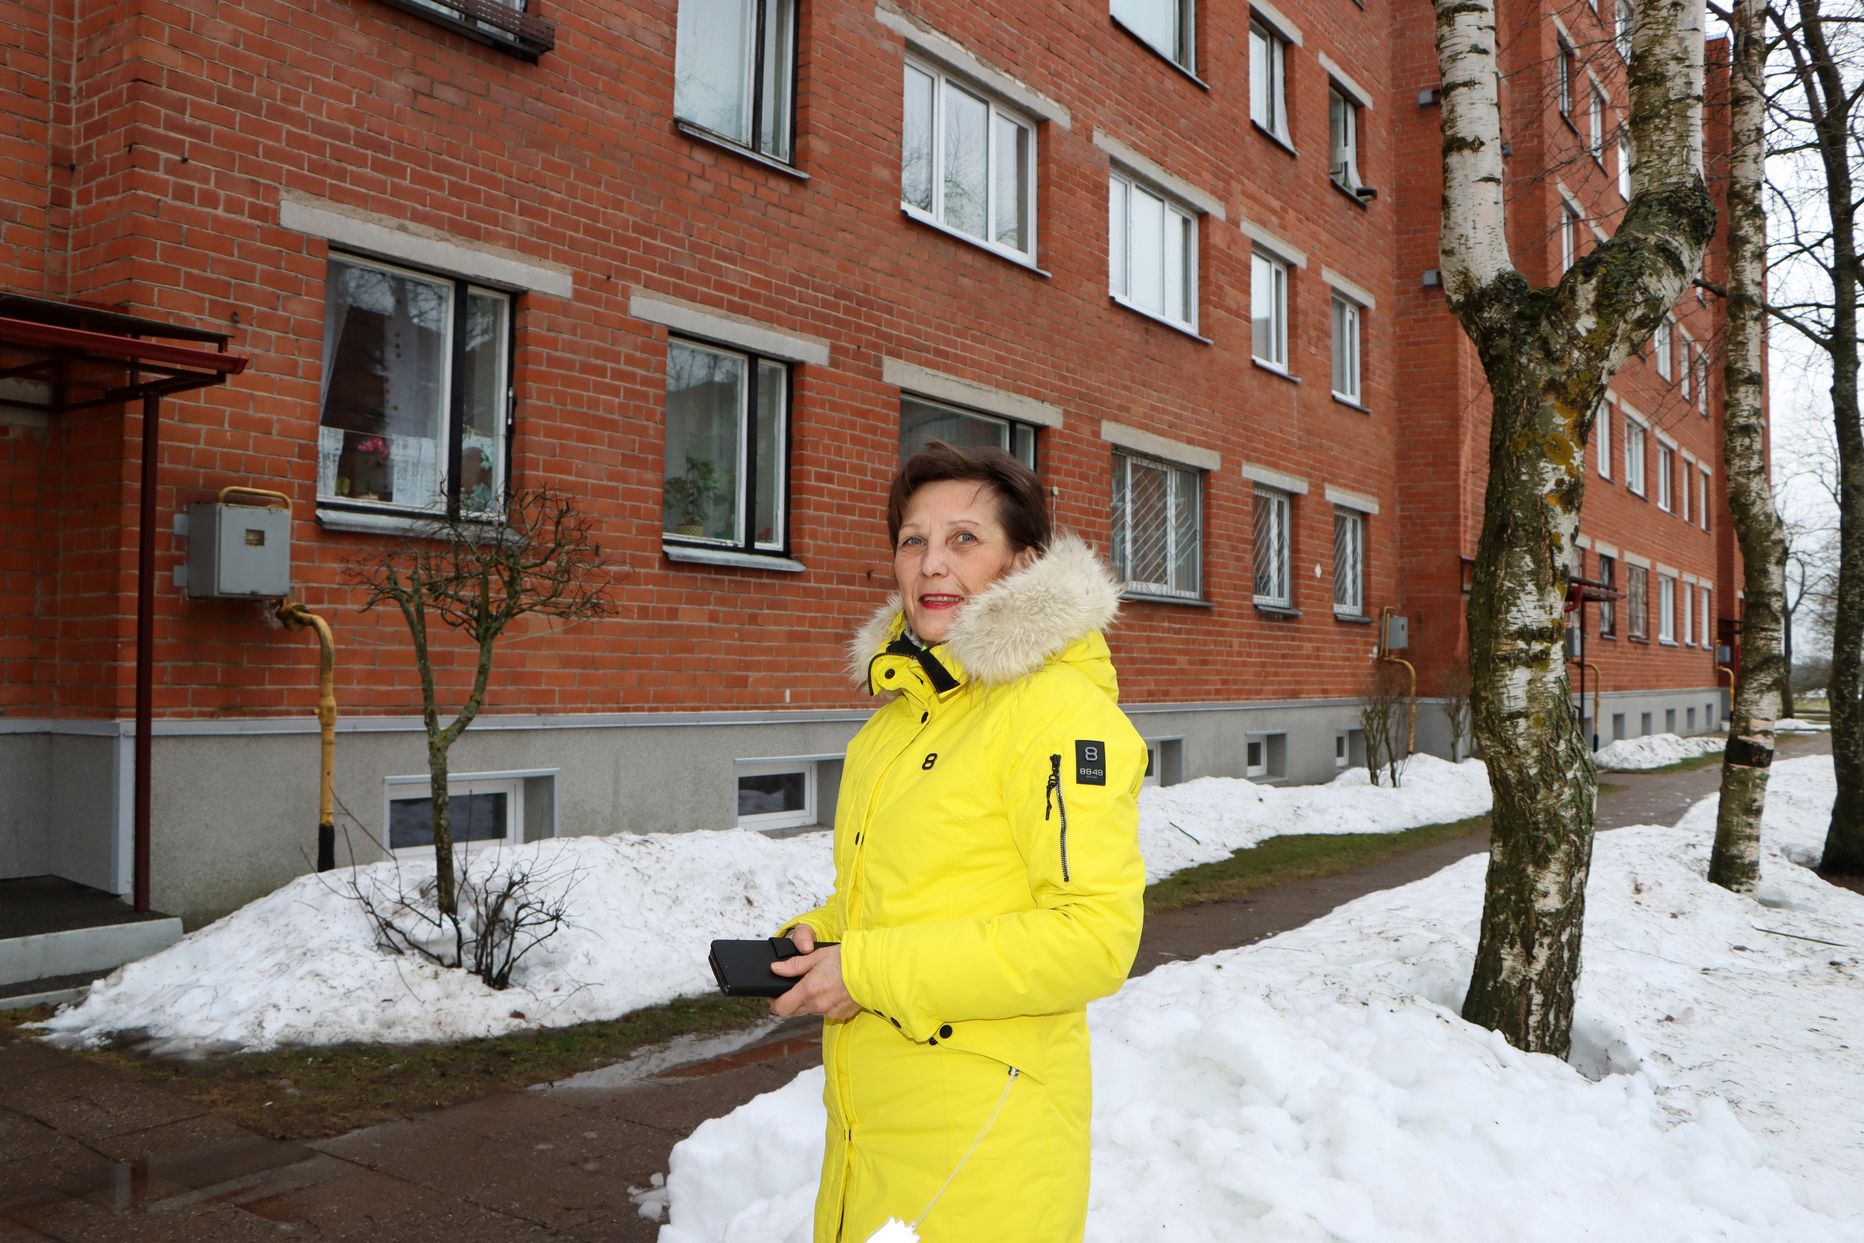 Председатель квартирного товарищества "Синивооре, 13" Елена Мутонен говорит, что с квартирами россиян в их доме проблем пока нет, но есть с другими собственниками-нерезидентами.